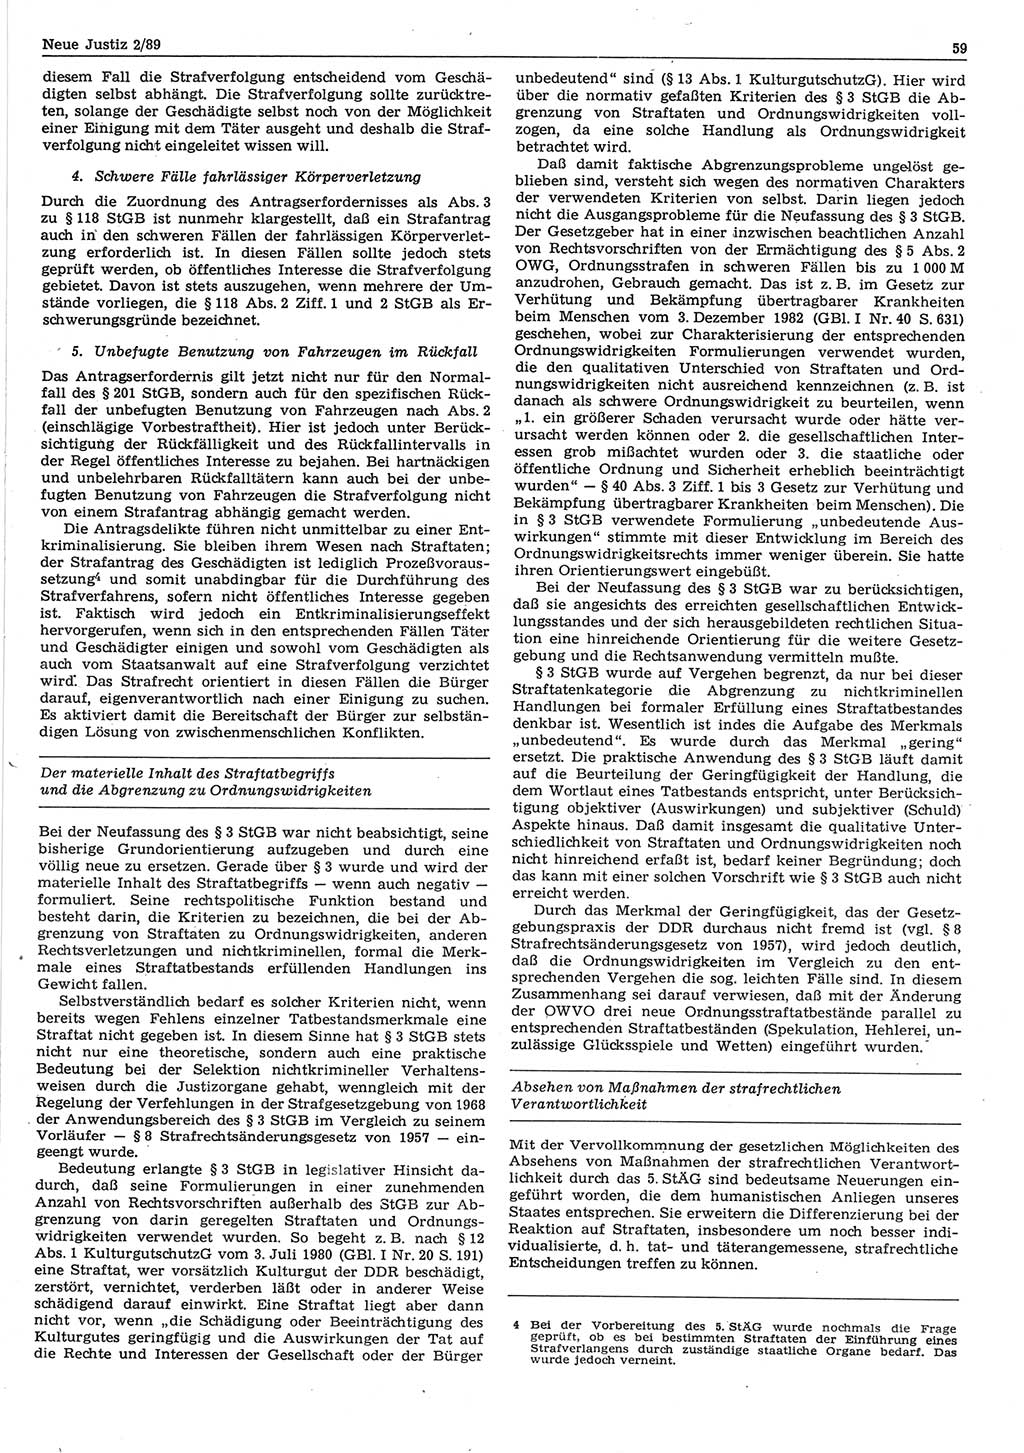 Neue Justiz (NJ), Zeitschrift für sozialistisches Recht und Gesetzlichkeit [Deutsche Demokratische Republik (DDR)], 43. Jahrgang 1989, Seite 59 (NJ DDR 1989, S. 59)